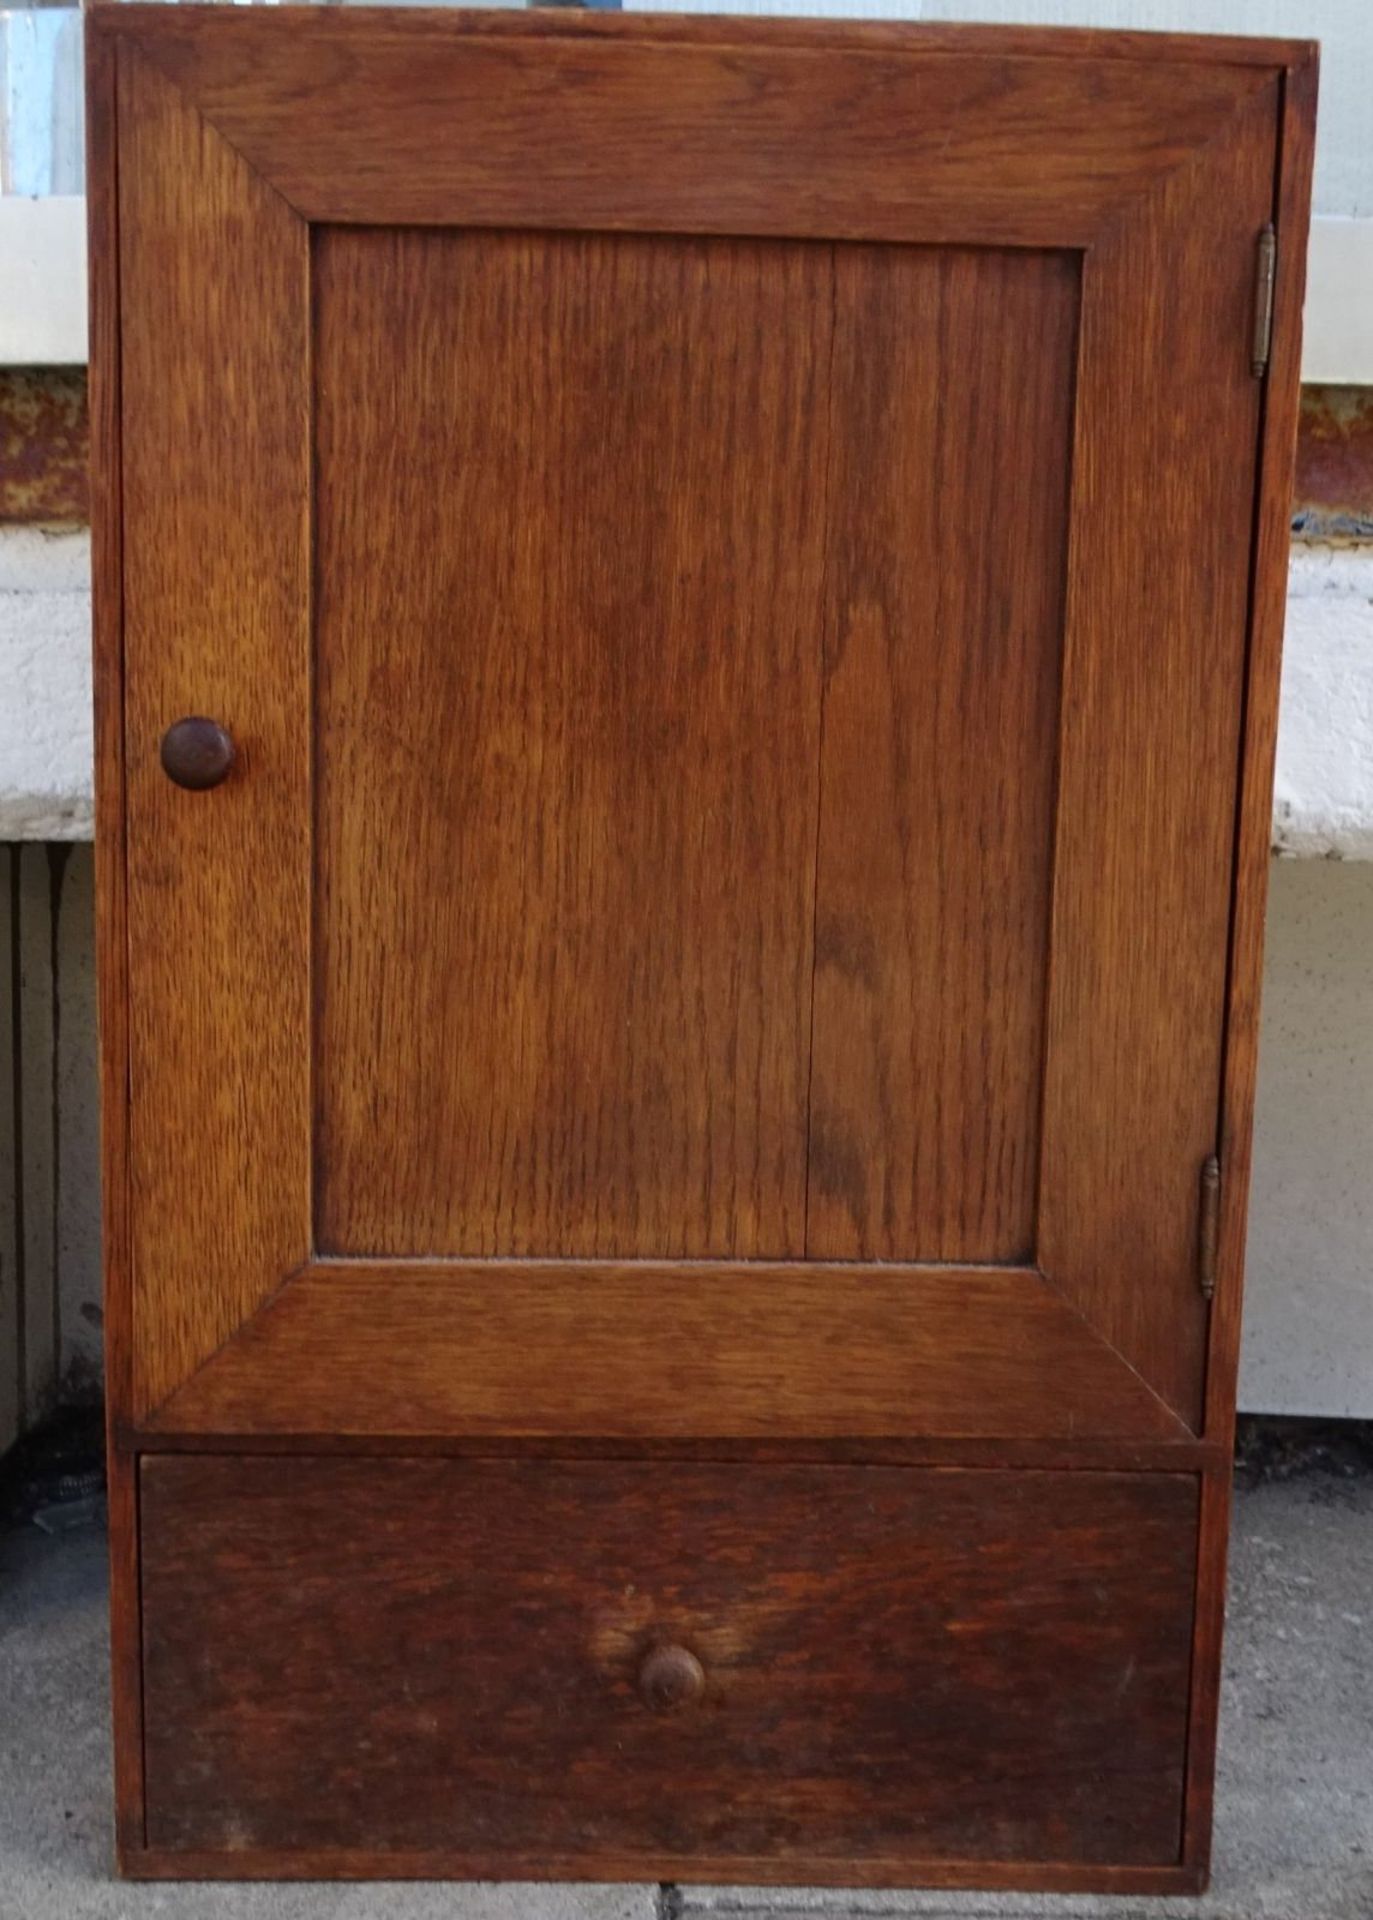 kl. Holz-Apotheken-Wandschrank, eine Schublade, 50x30x11 cm - Bild 4 aus 5